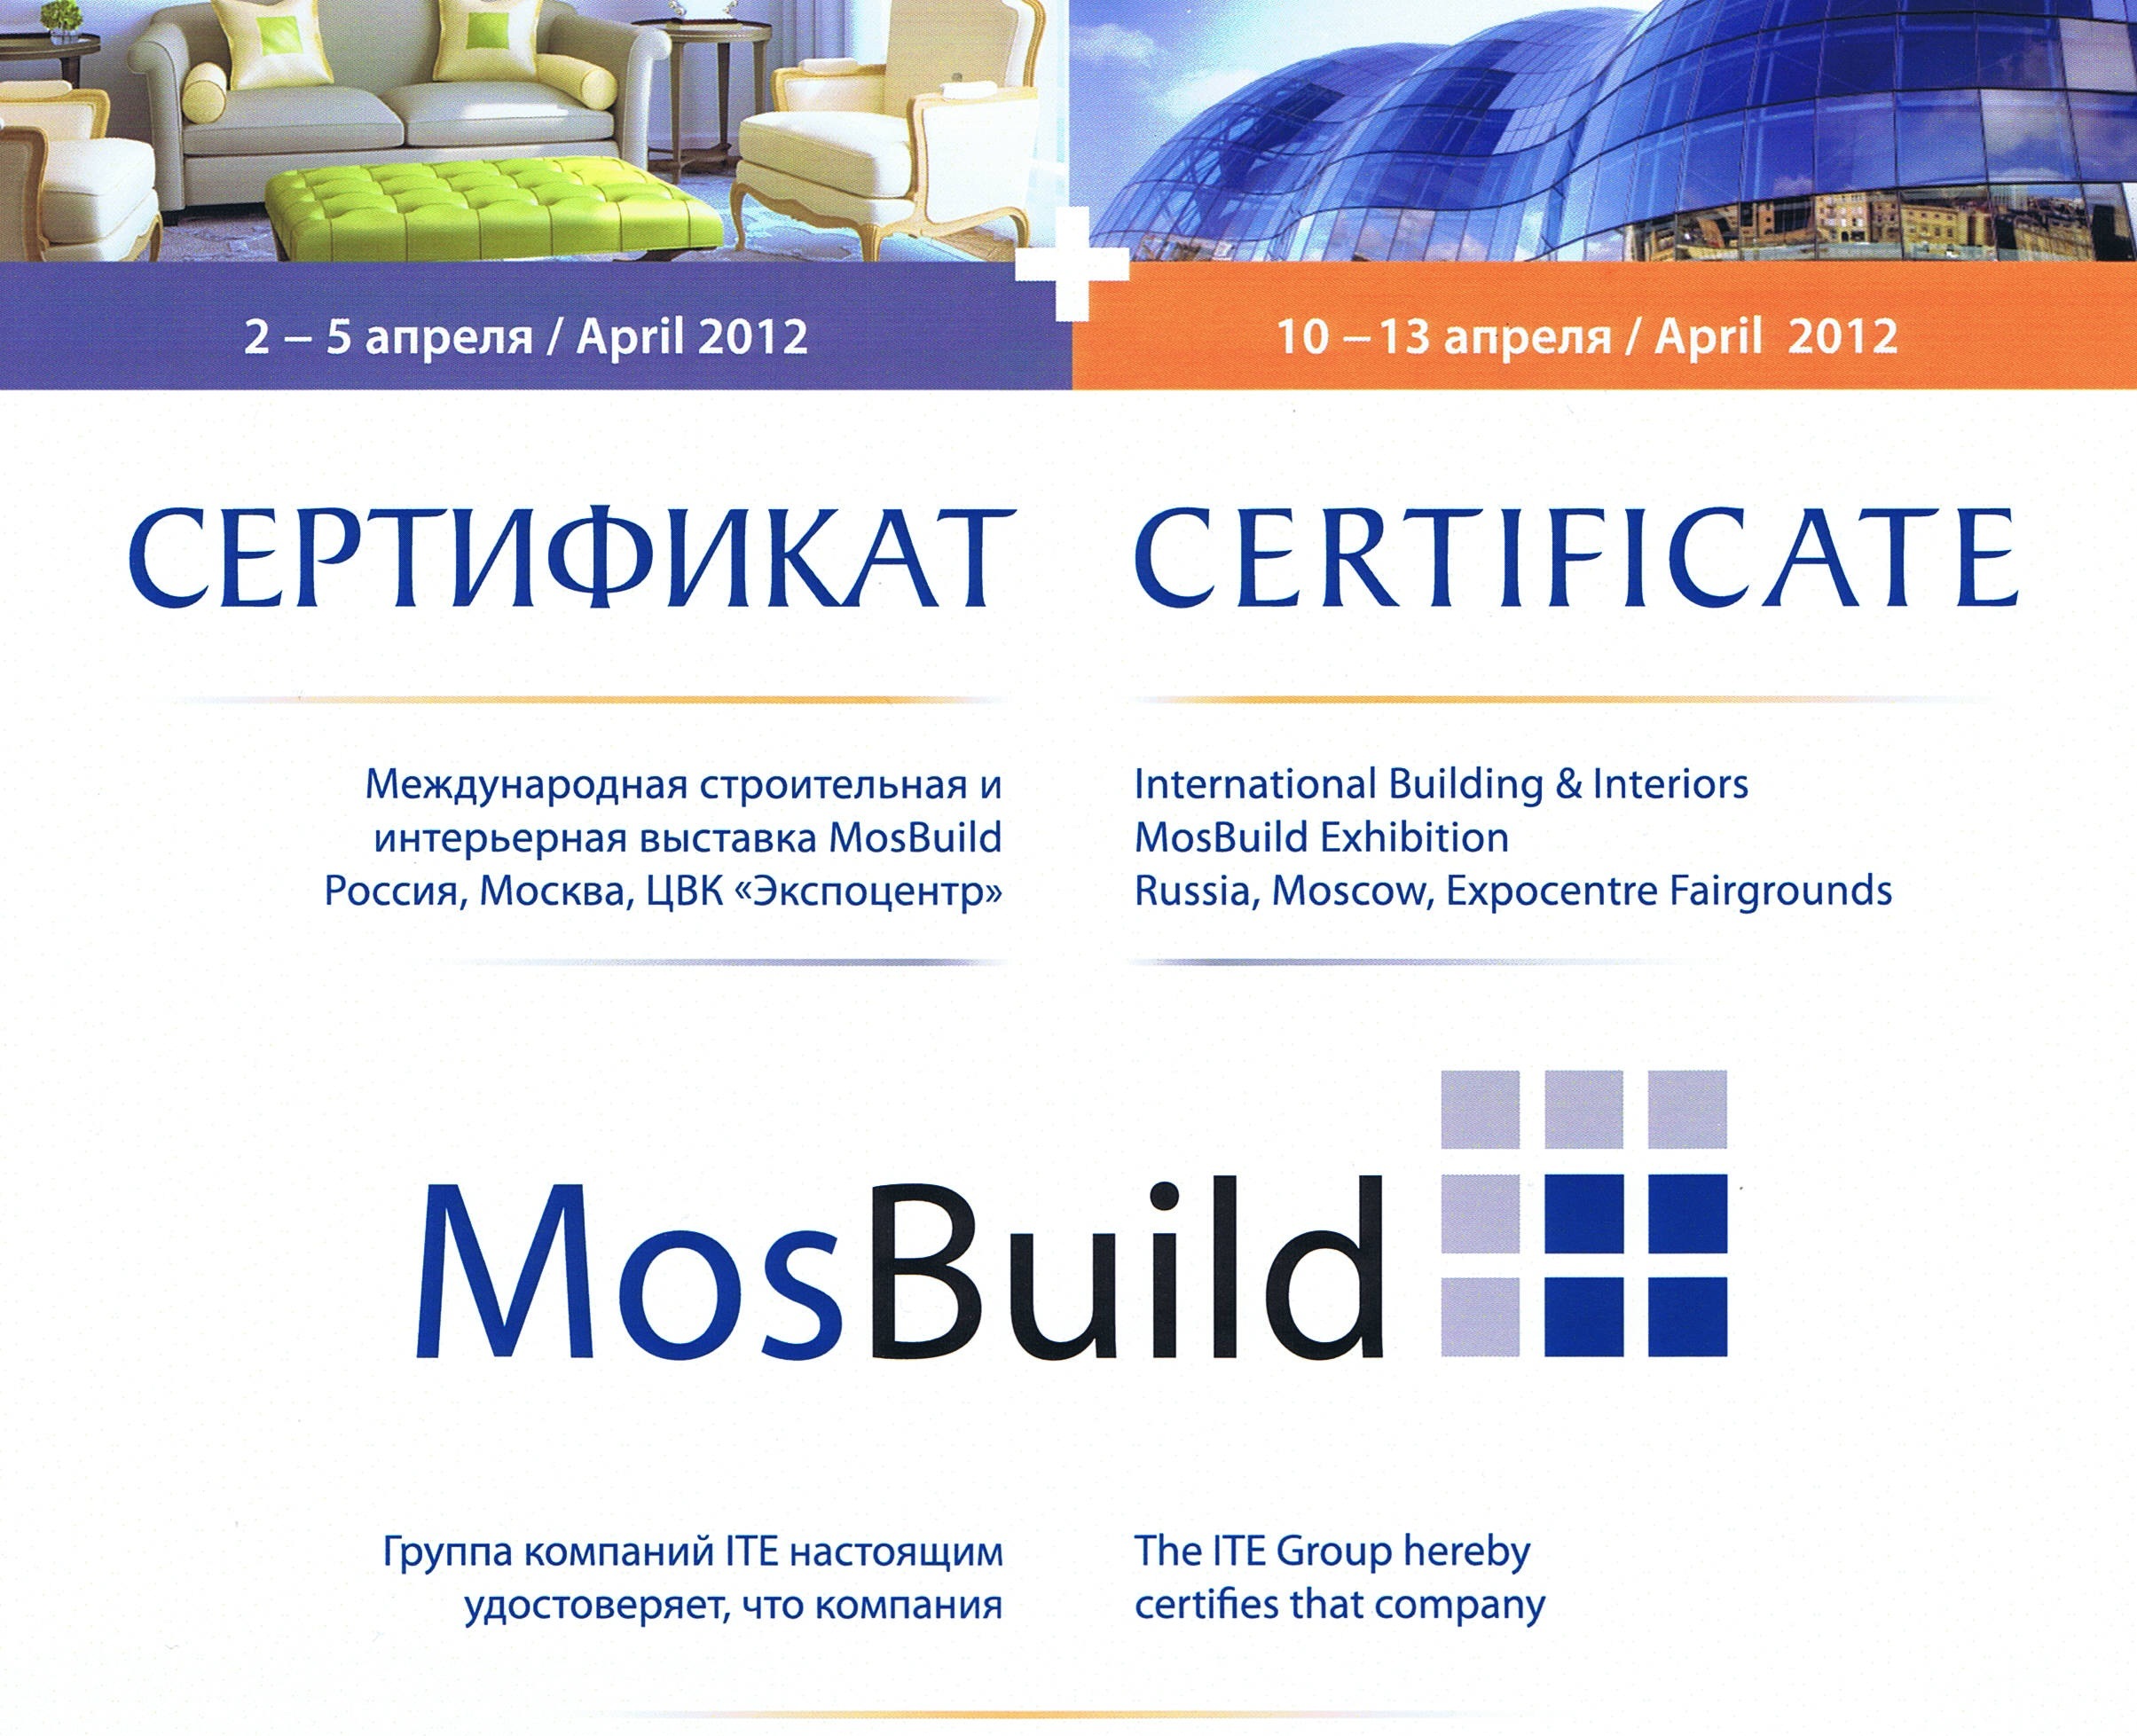 Сертификат,2012 - Copy